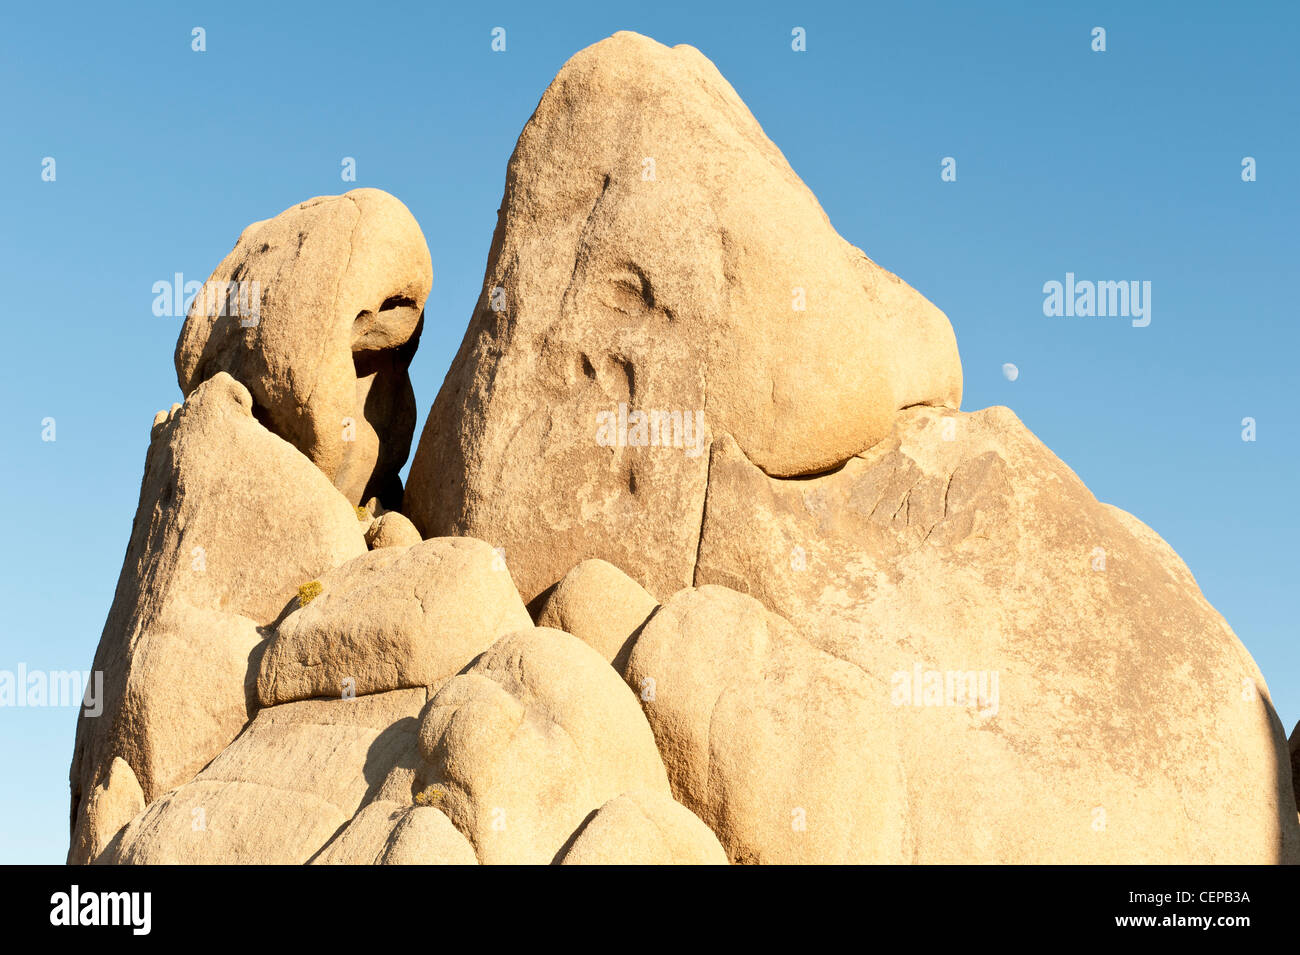 Les roches et lune, Joshua Tree National Park, Californie Banque D'Images